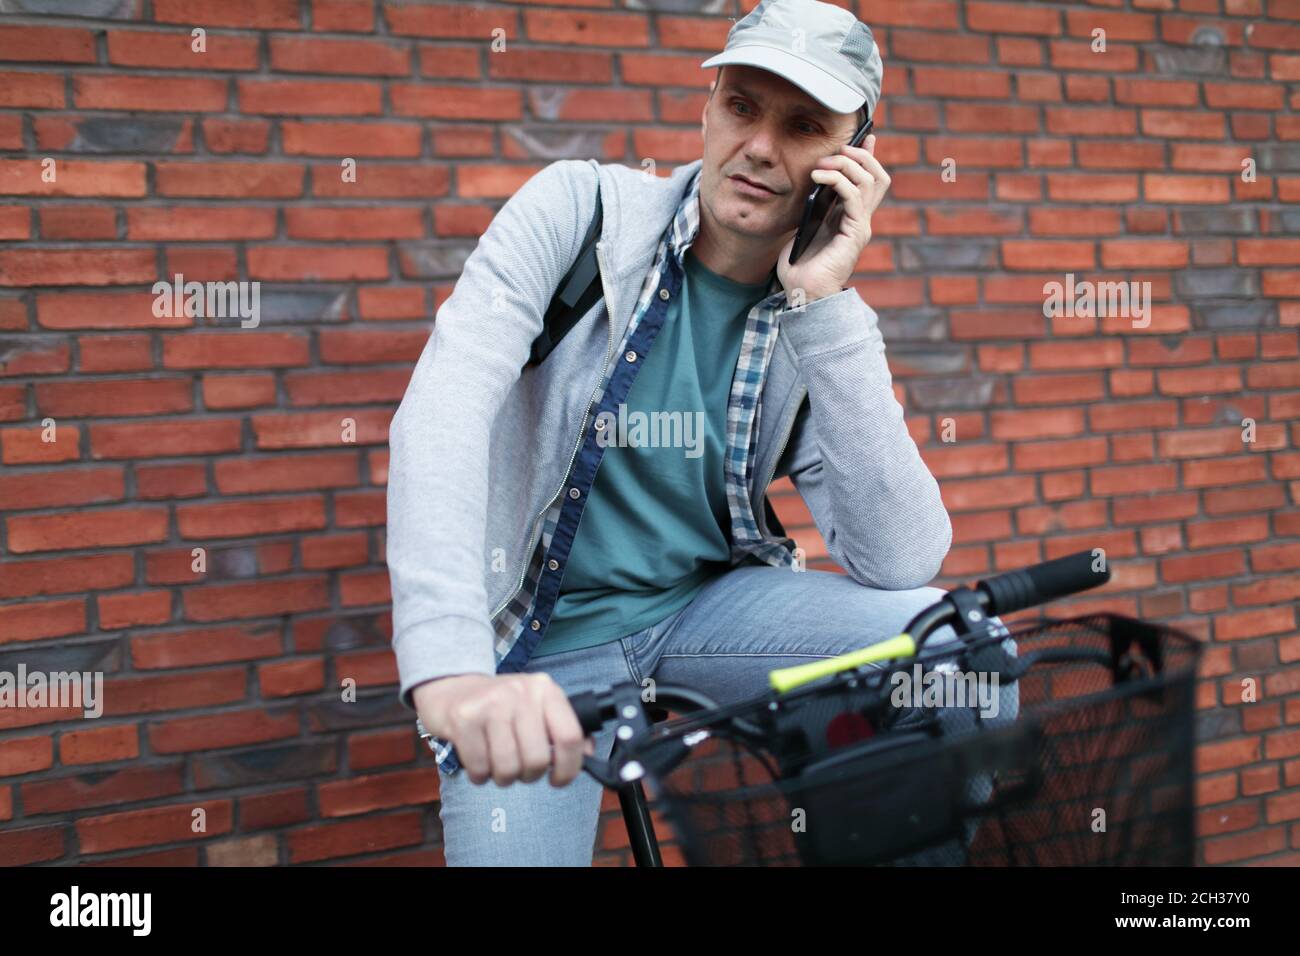 Reifer kaukasischer Mann, der mit dem Telefon spricht, während er auf seinem sitzt Fahrrad in einer Stadt gegen rote Backsteinmauer Stockfoto